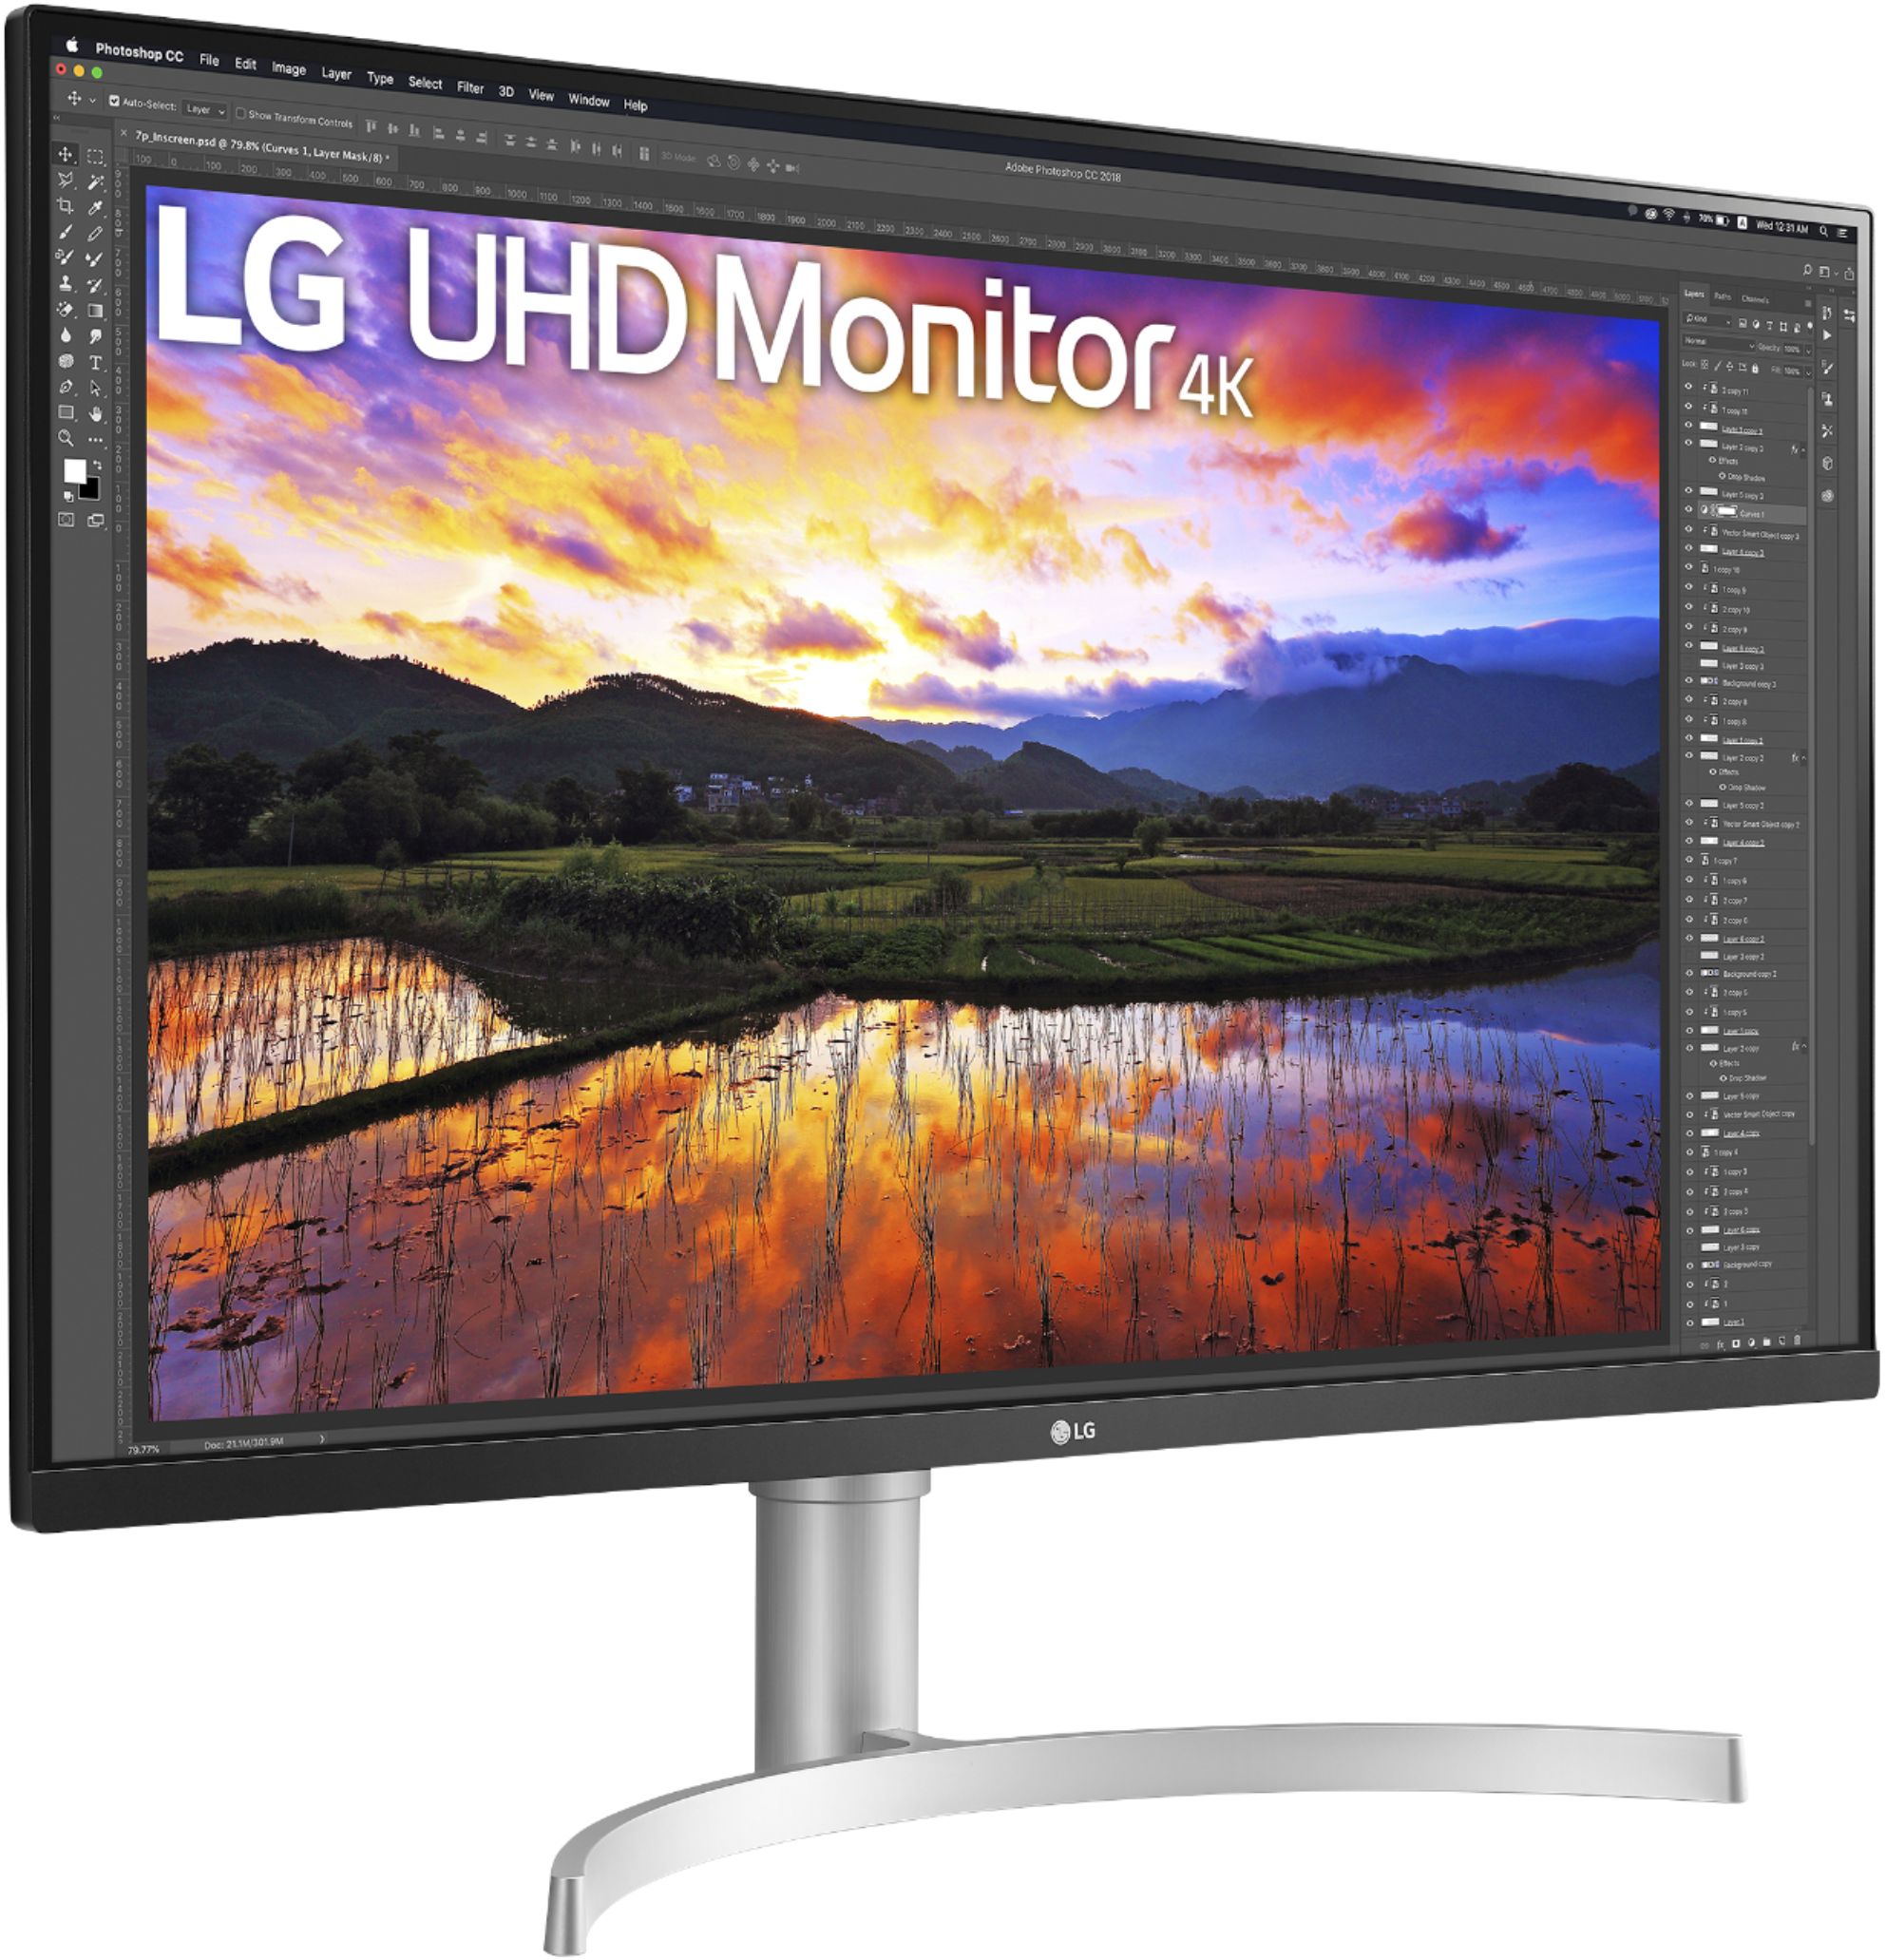 32 inch monitor 4k